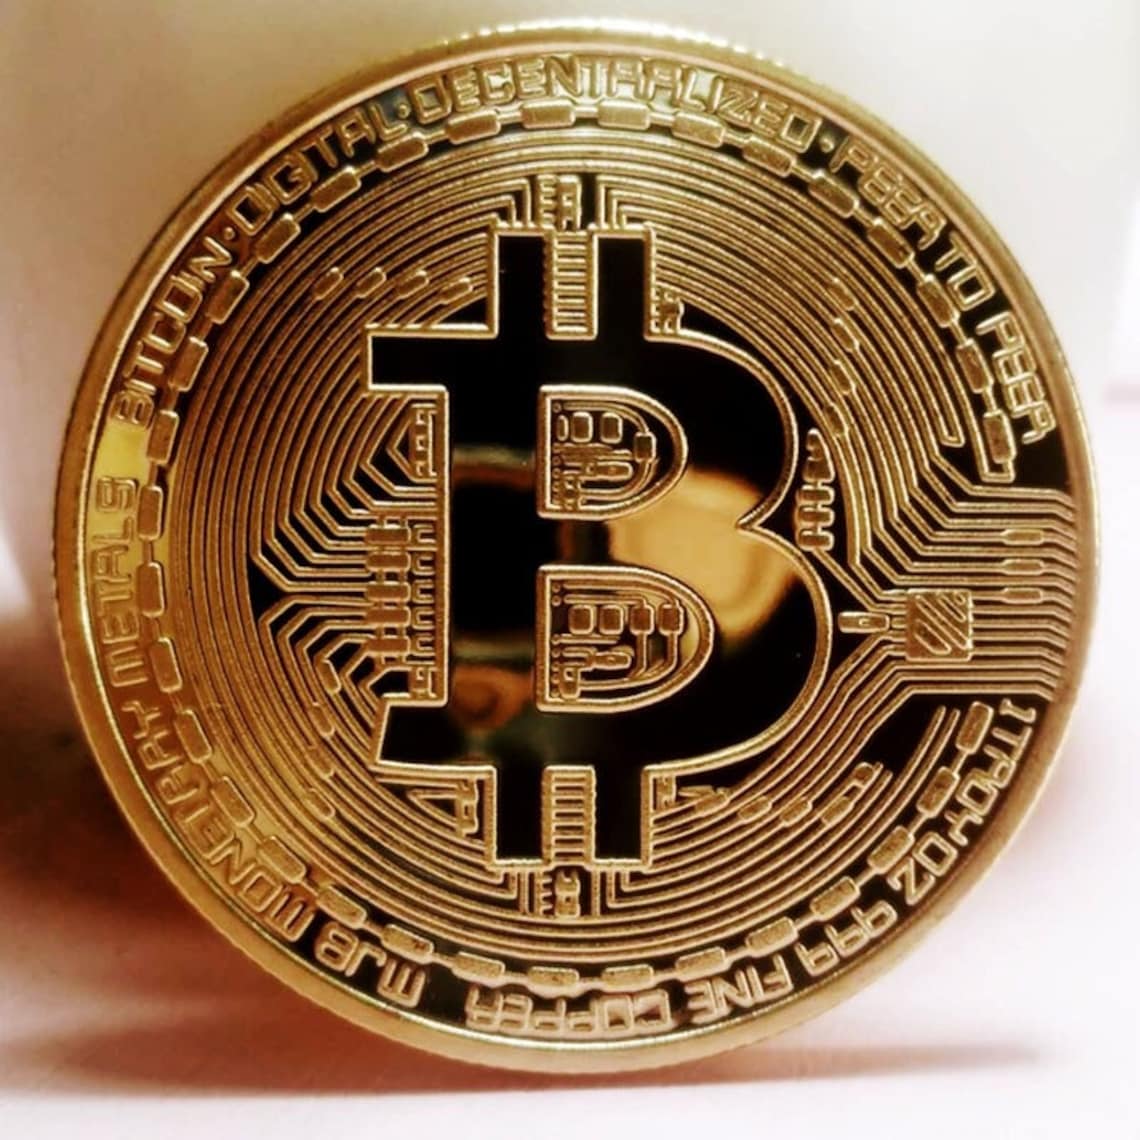 bitcoin physical coin worth